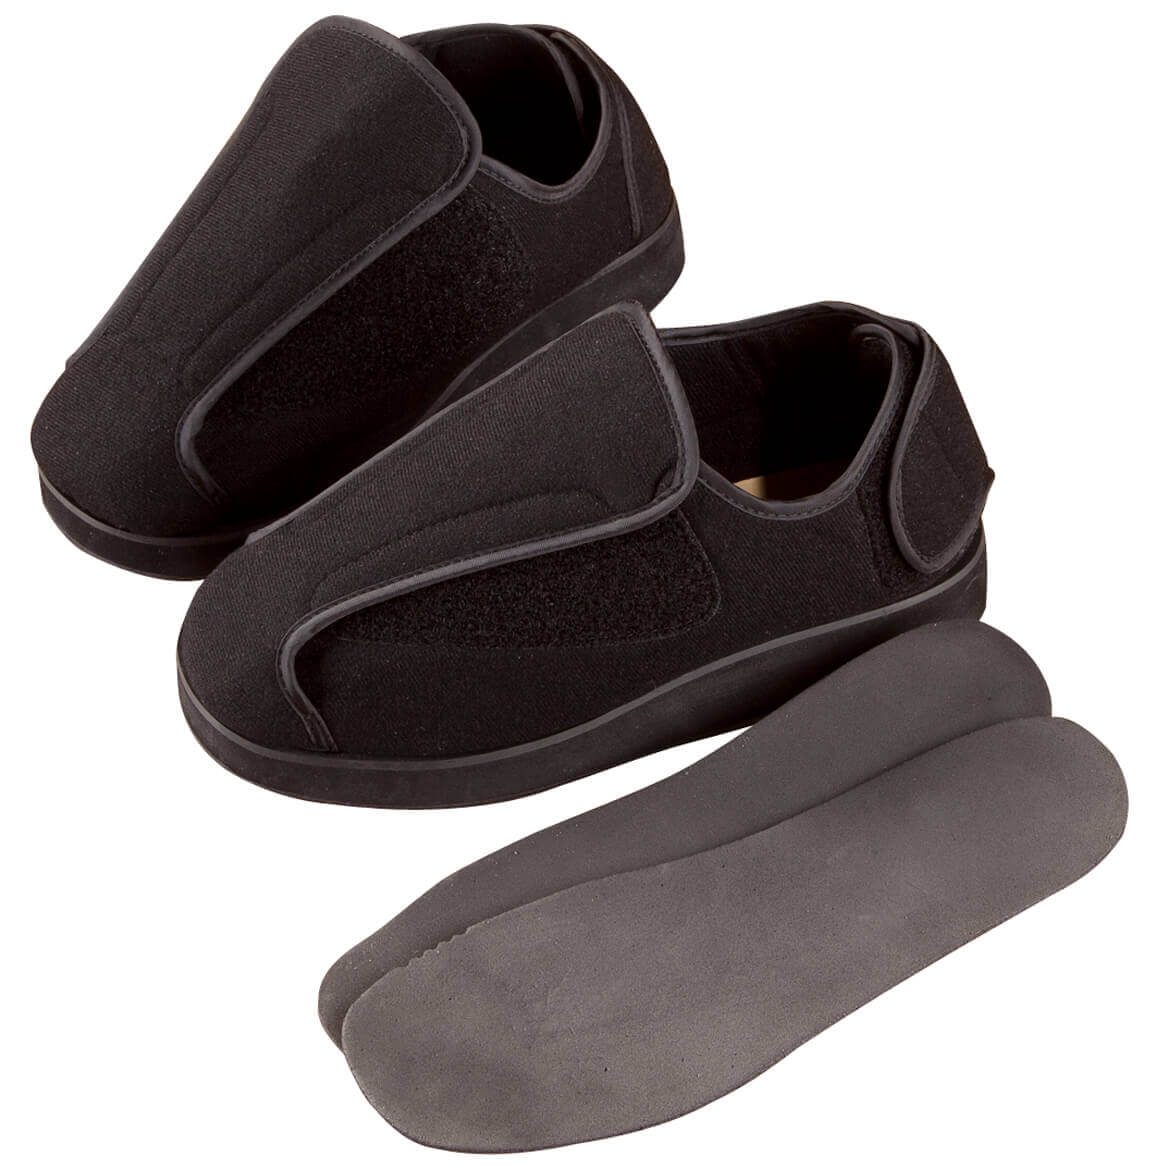 adjustable edema slippers